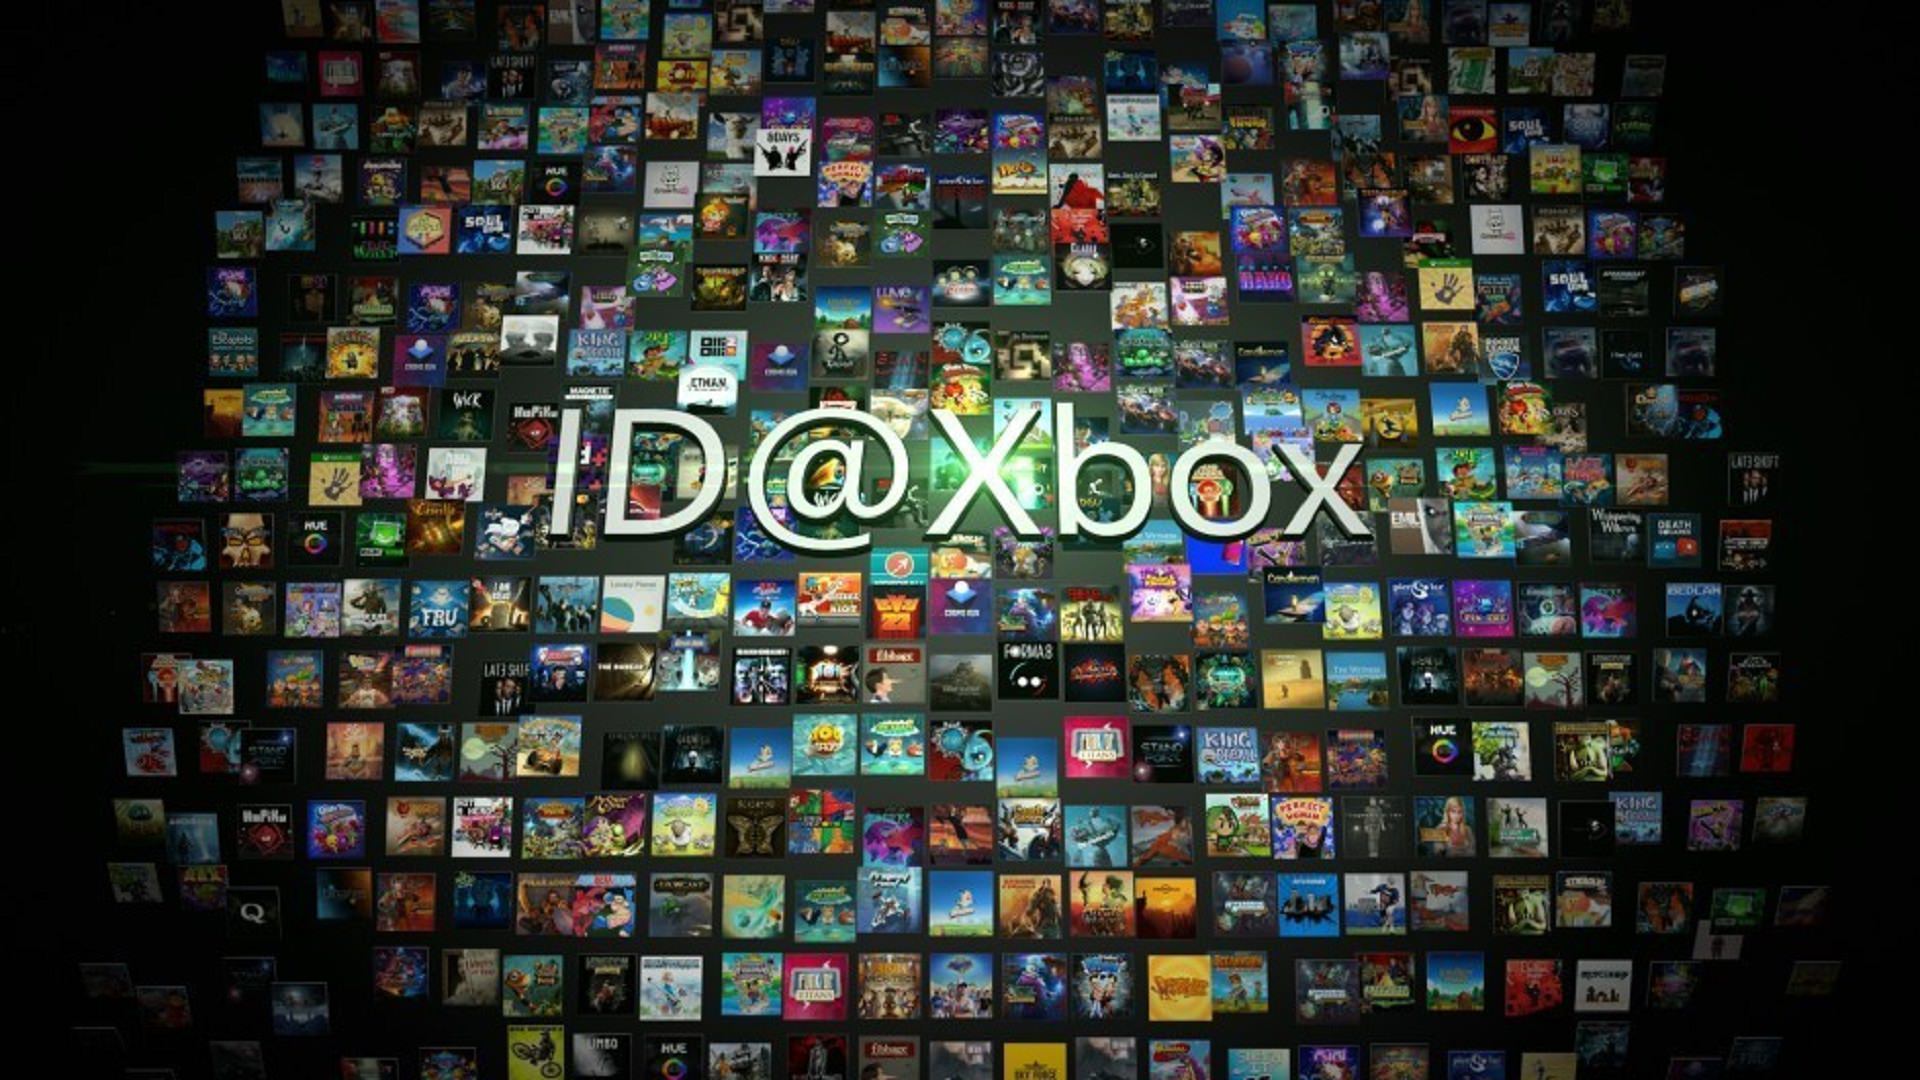 بازگشت دموهای ID@Xbox در هفته جاری